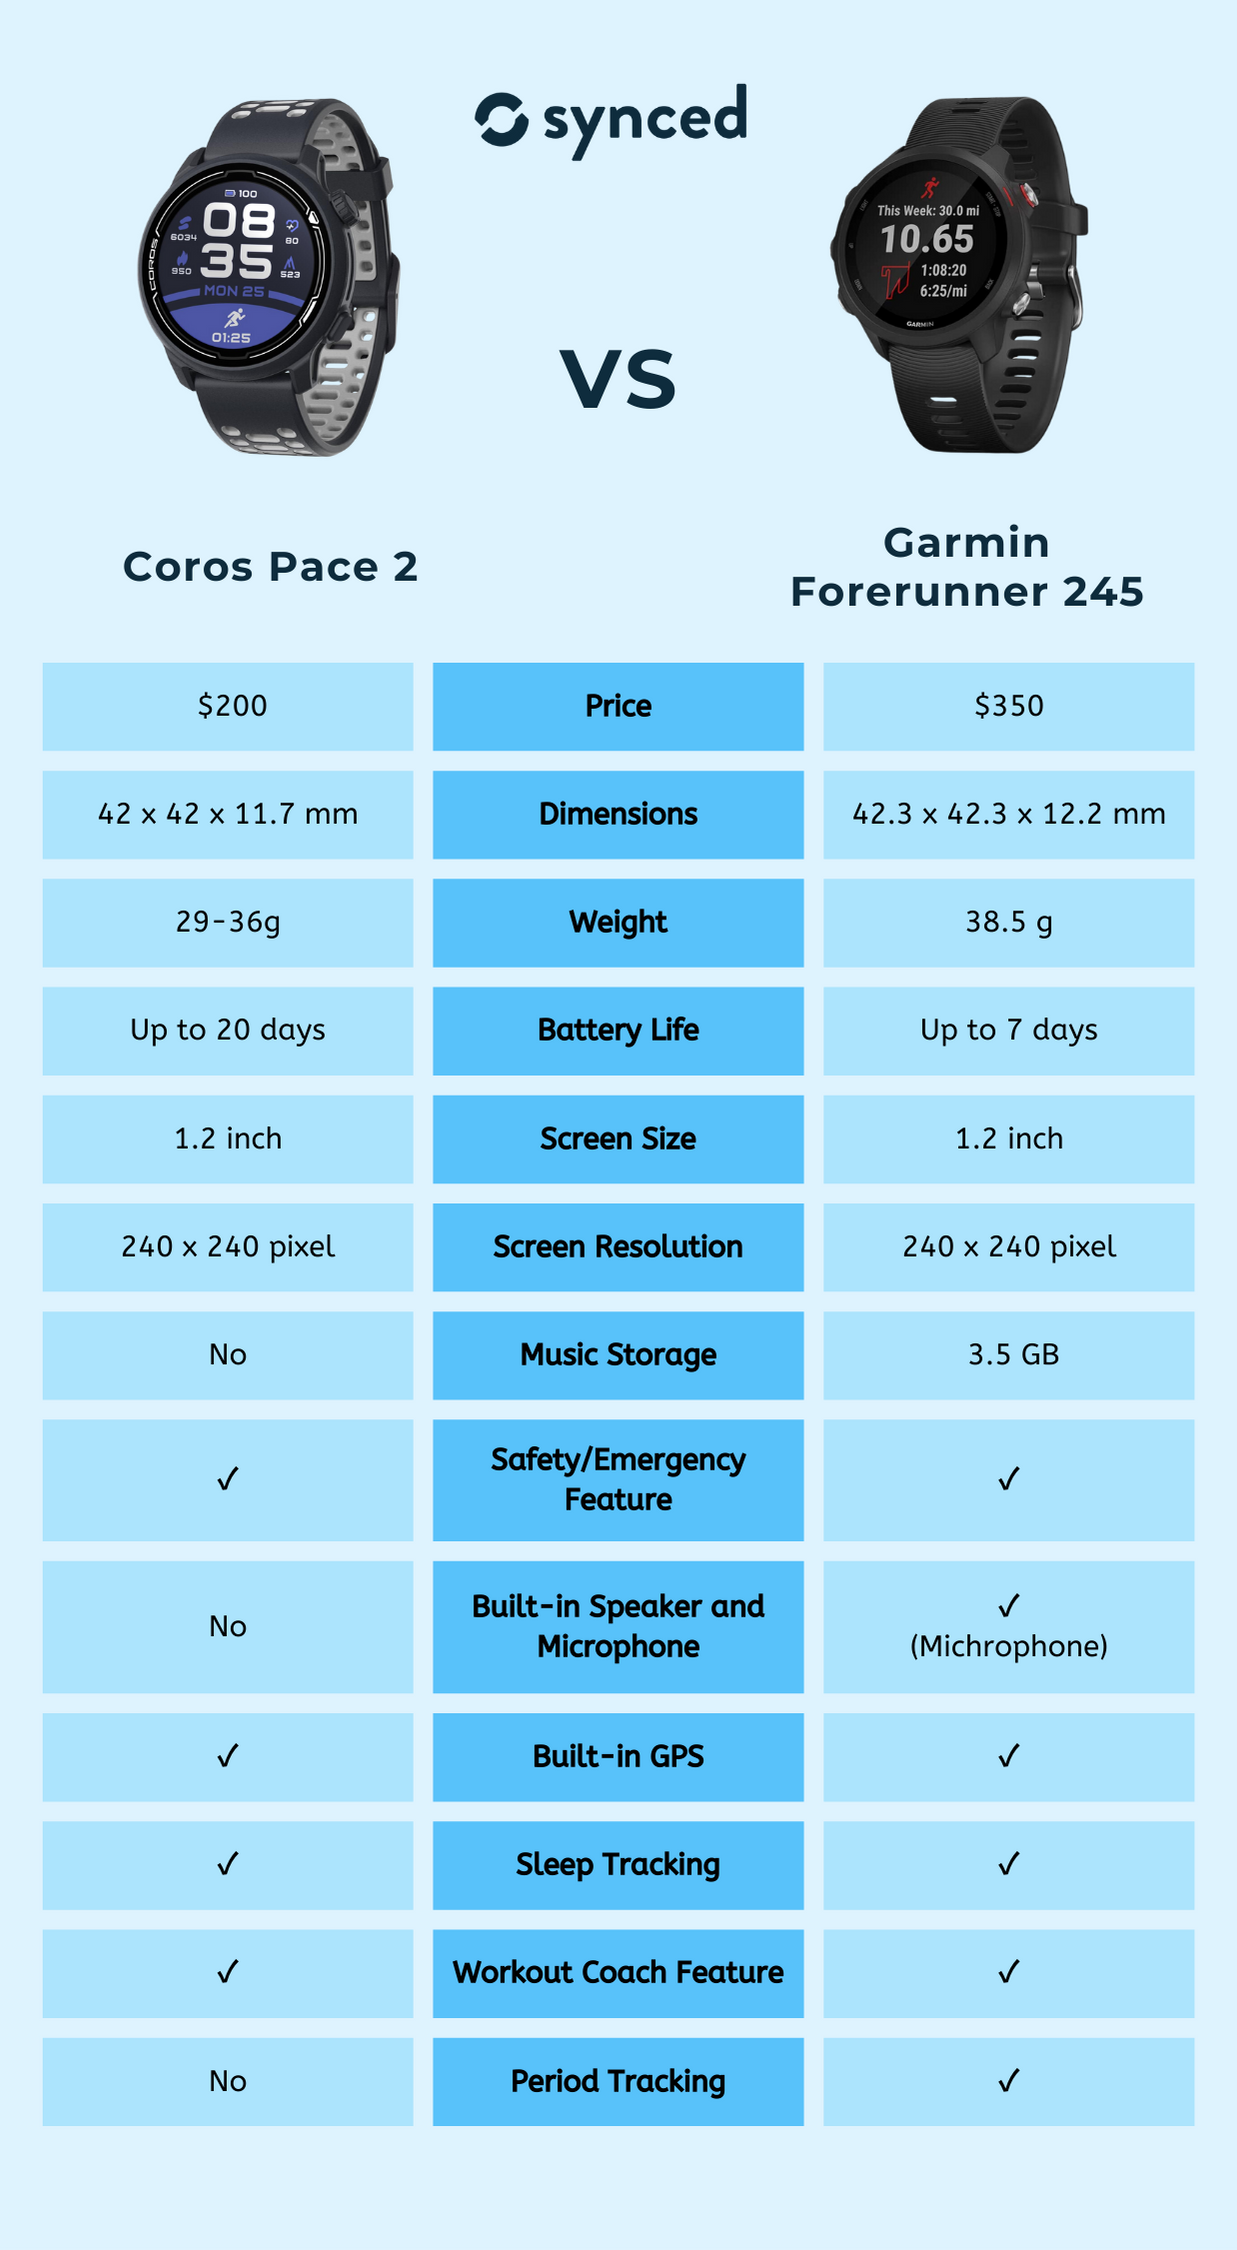 Coros Pace 2 vs Garmin Forerunner 245